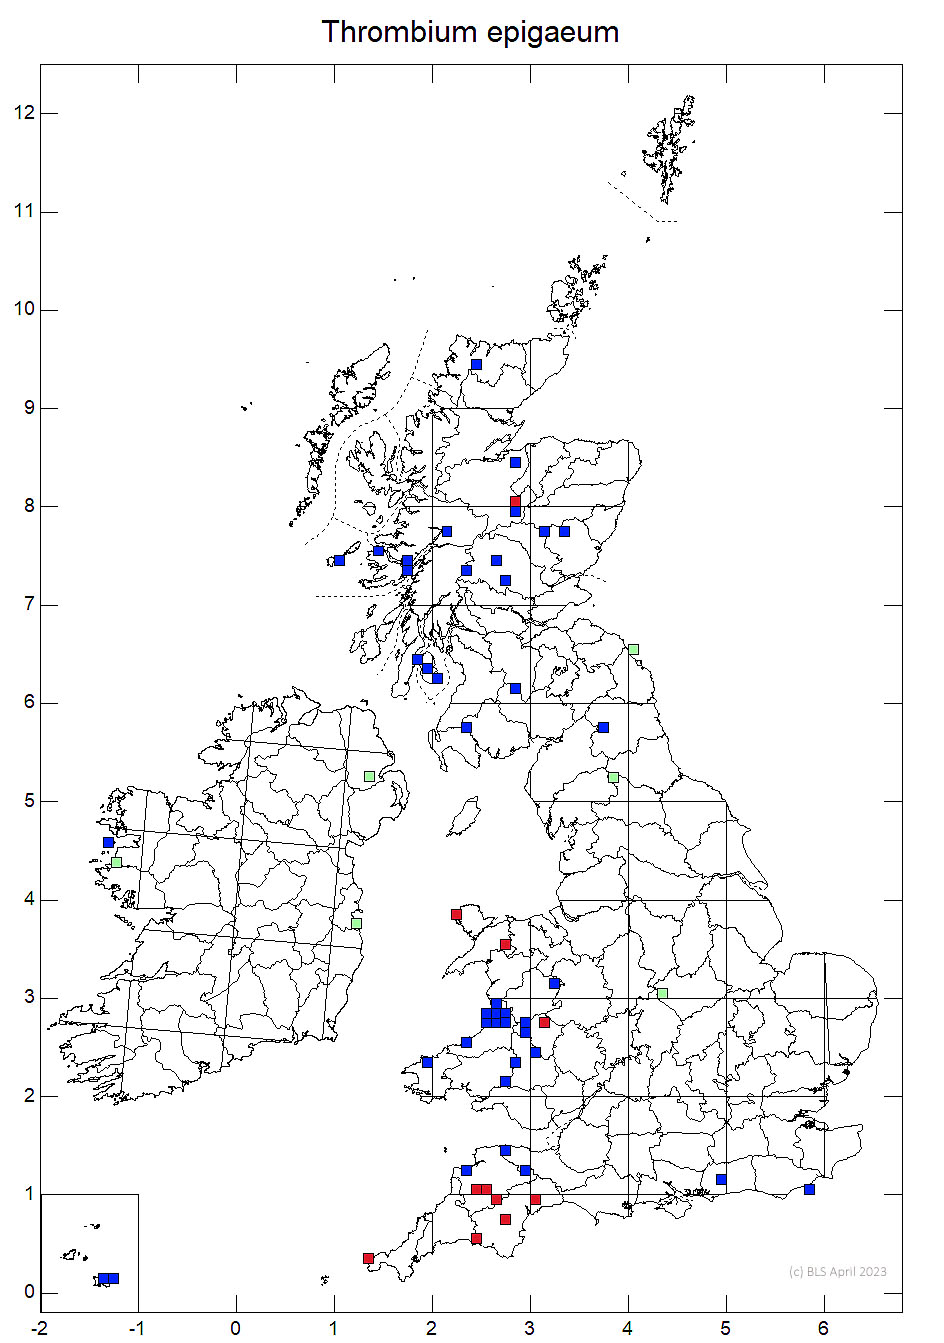 Thrombium epigaeum 10km sq distribution map